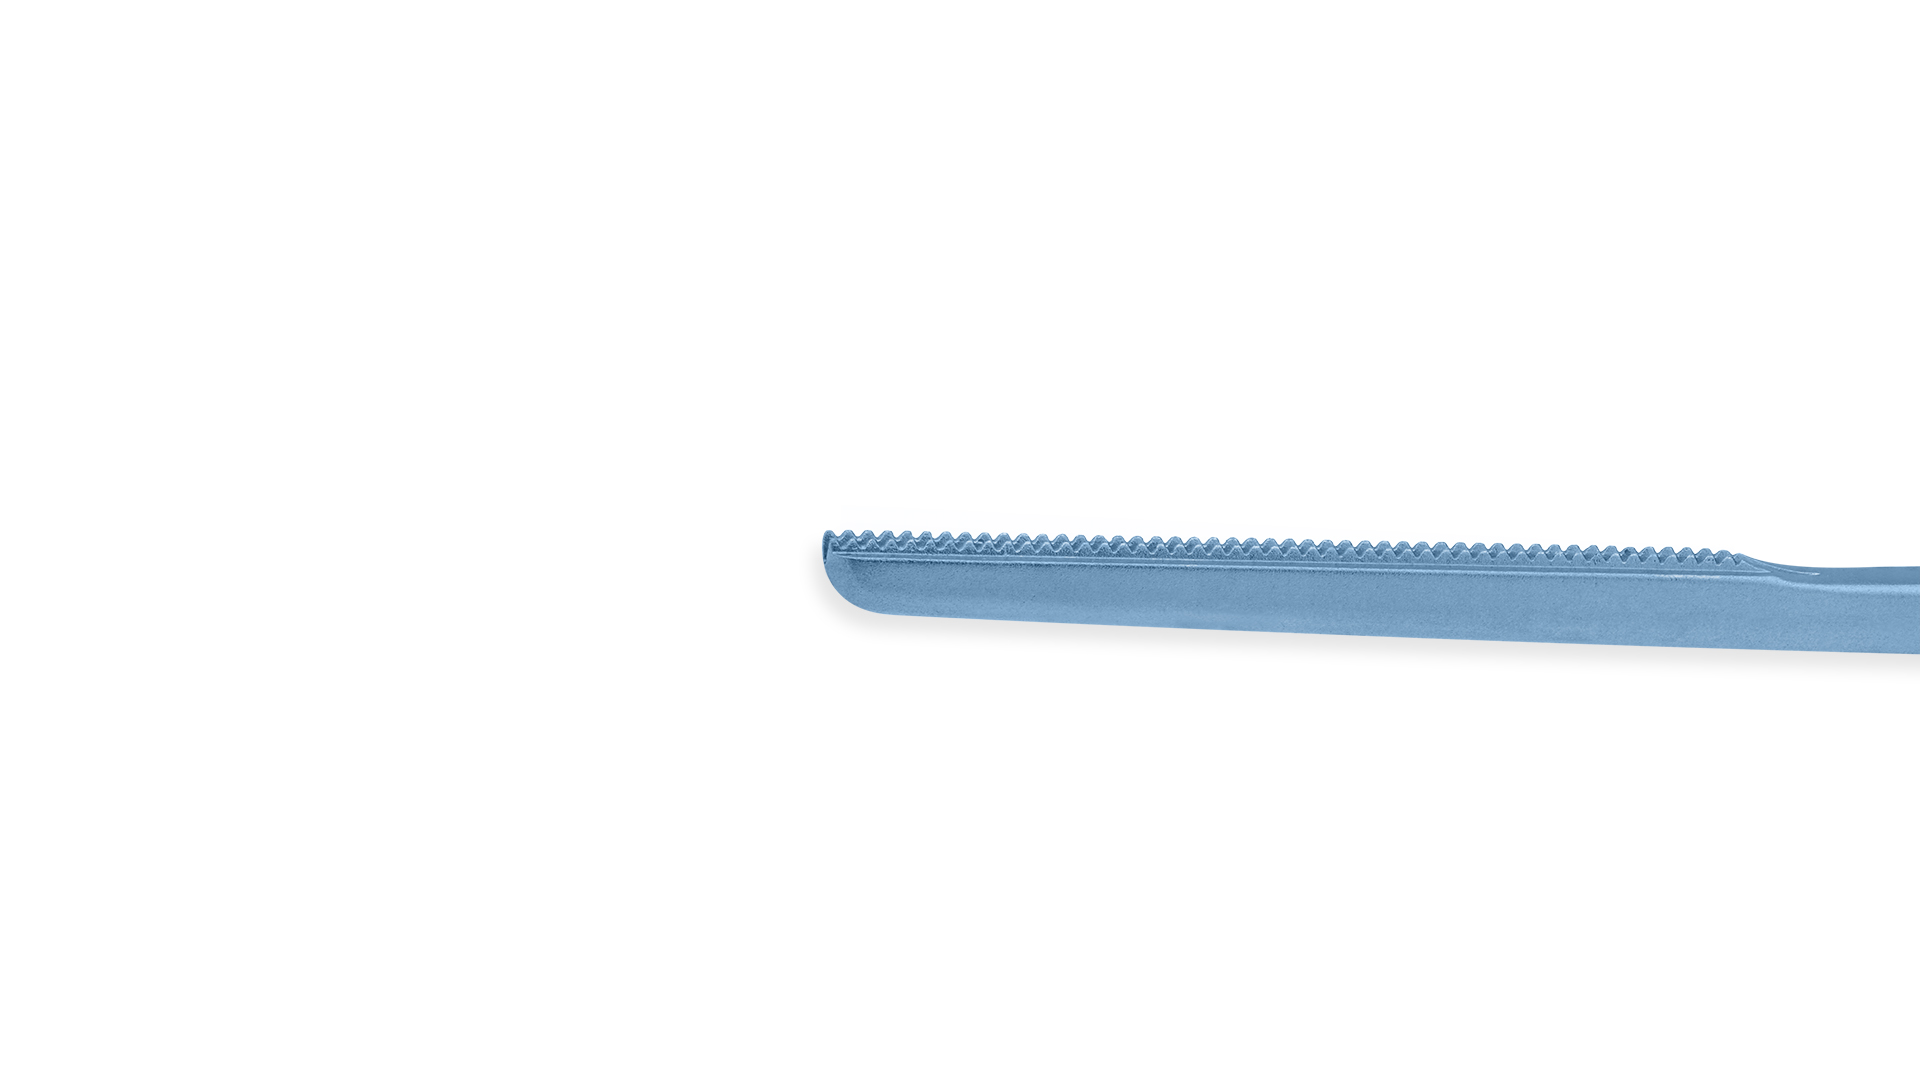 DeBakey Tissue Forceps - Straight 1.5mm tips